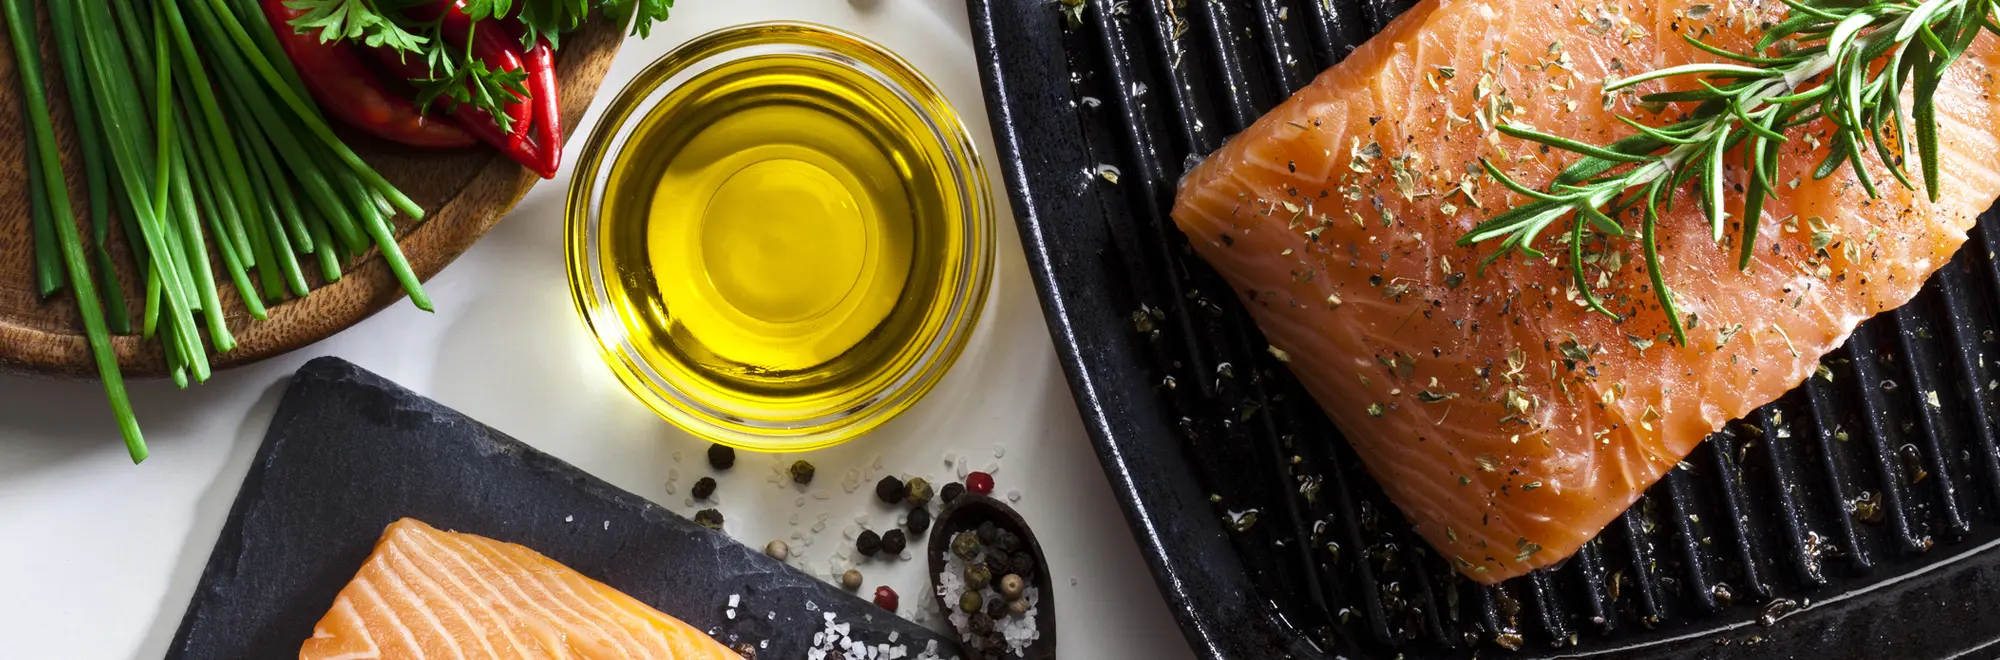 ¿Se puede cocinar con aceite de oliva virgen extra?